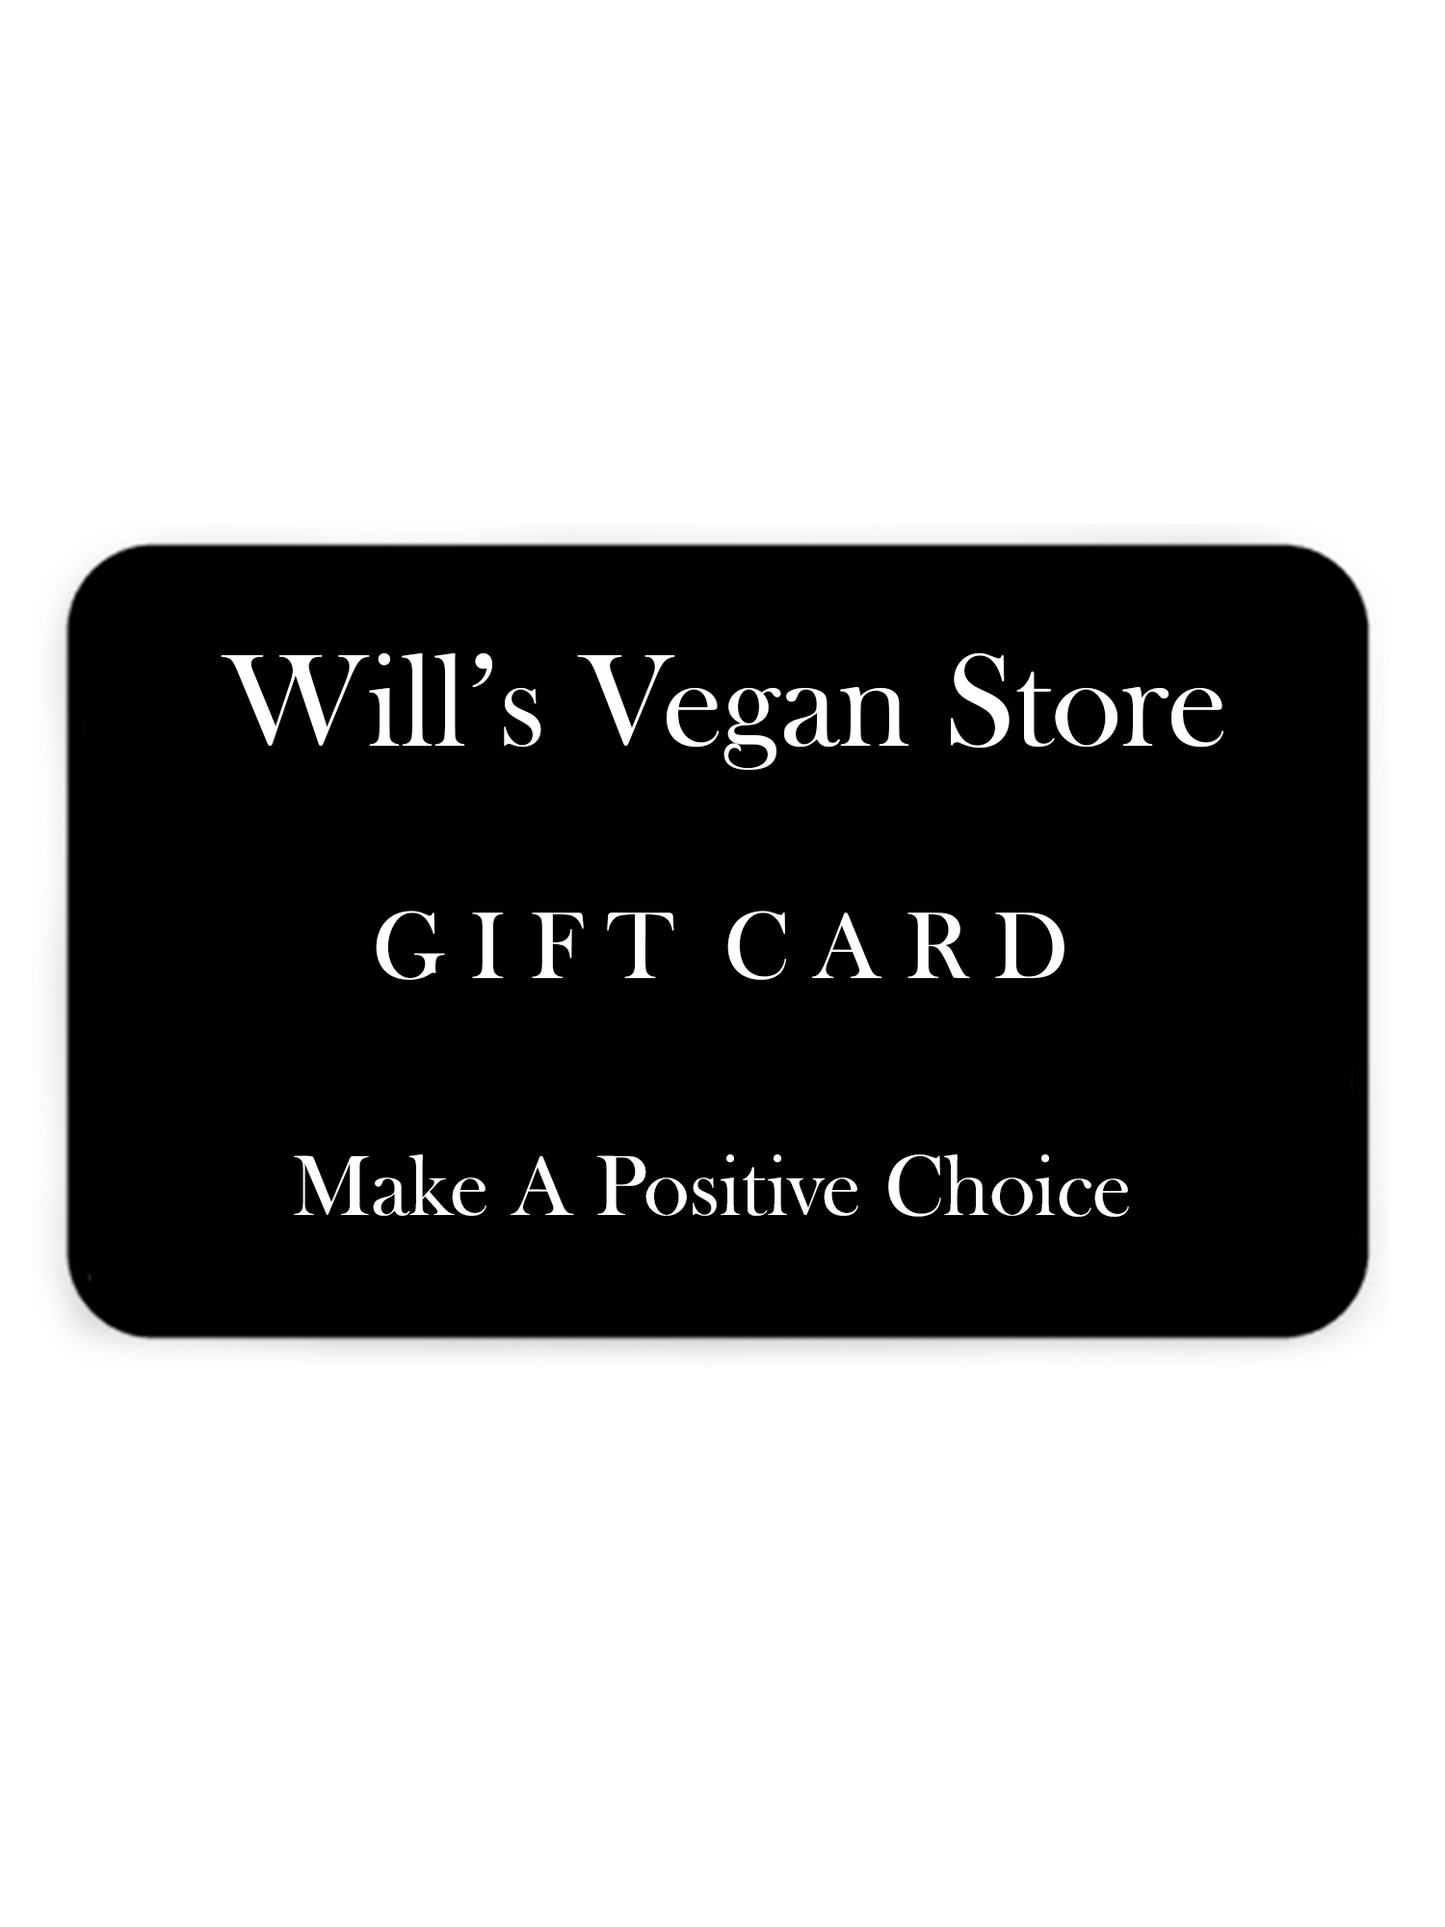 Will's Vegan Store Gift Card